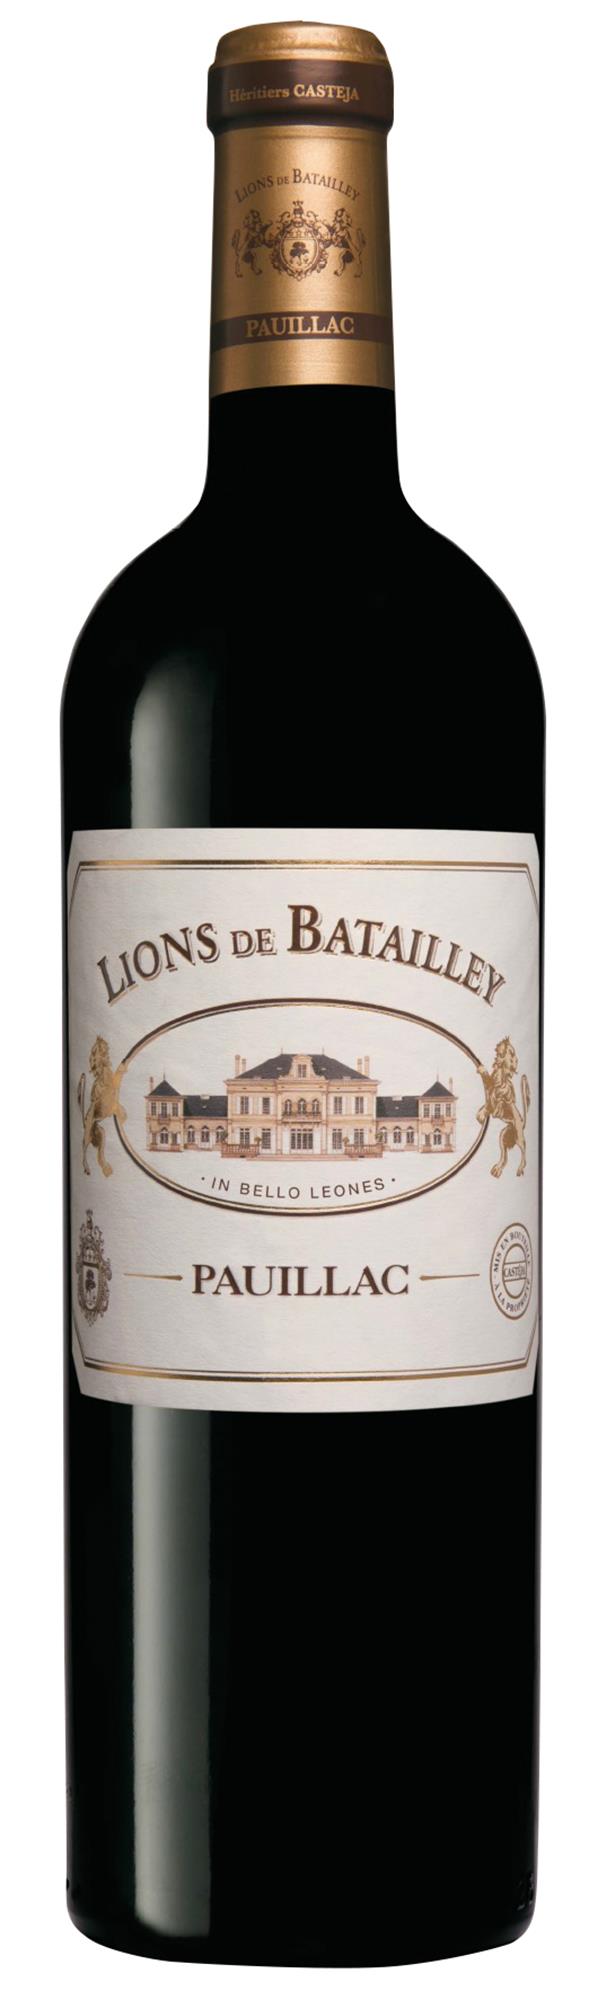 2015 LIONS DE BATAILLEY PAUILLAC 13,5% 75 cl